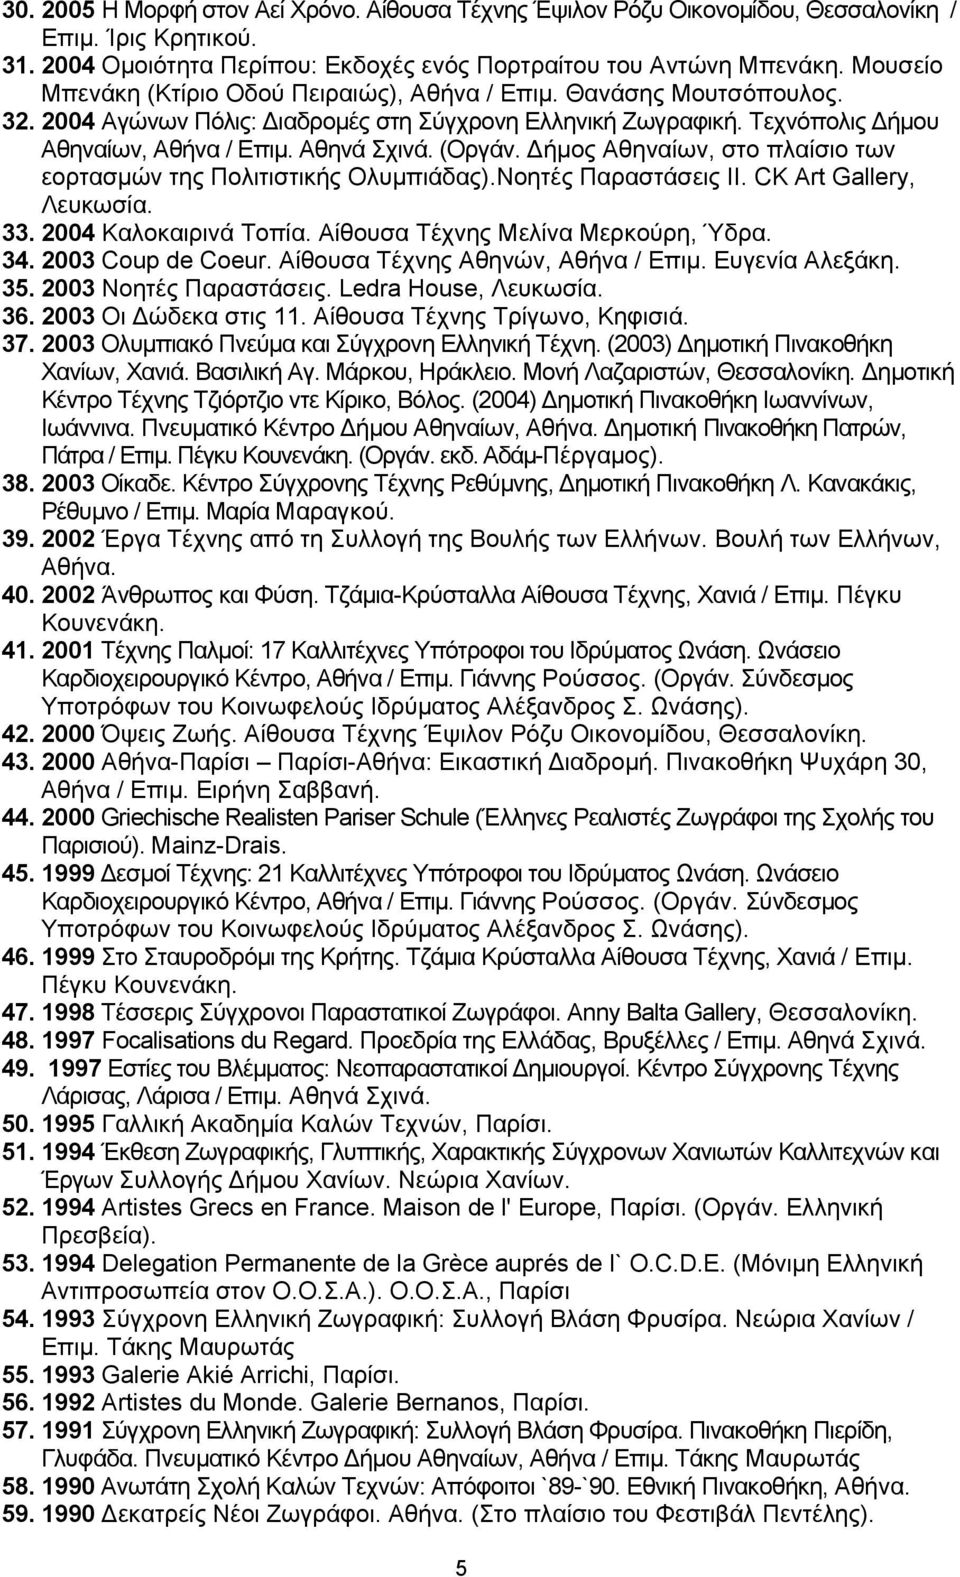 (Οξγάλ. Γήκνο Αζελαίσλ, ζην πιαίζην ησλ ενξηαζκώλ ηεο Πνιηηηζηηθήο Οιπκπηάδαο).Ννεηέο Παξαζηάζεηο ΗΗ. CK Art Gallery, Λεπθσζία. 33. 2004 Καινθαηξηλά Σνπία. Αίζνπζα Σέρλεο Μειίλα Μεξθνύξε, Όδξα. 34.